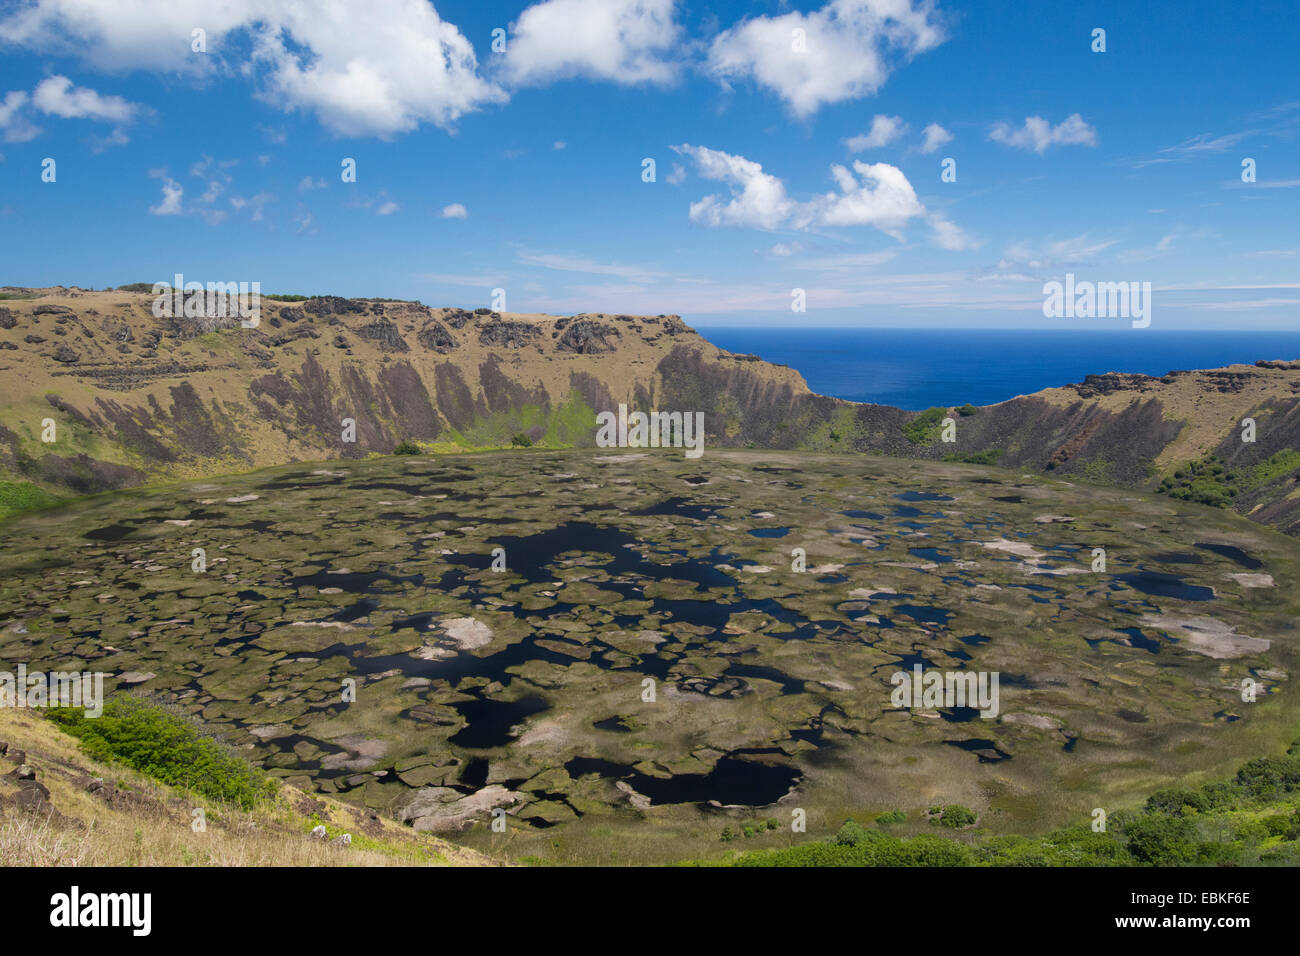 L'île de Pâques Rapa Nui, aka Orongo Rapa Nui, NP. Rano Kau, le plus grand cratère volcanique sur l'île. Haut de la cratère surplombent Banque D'Images